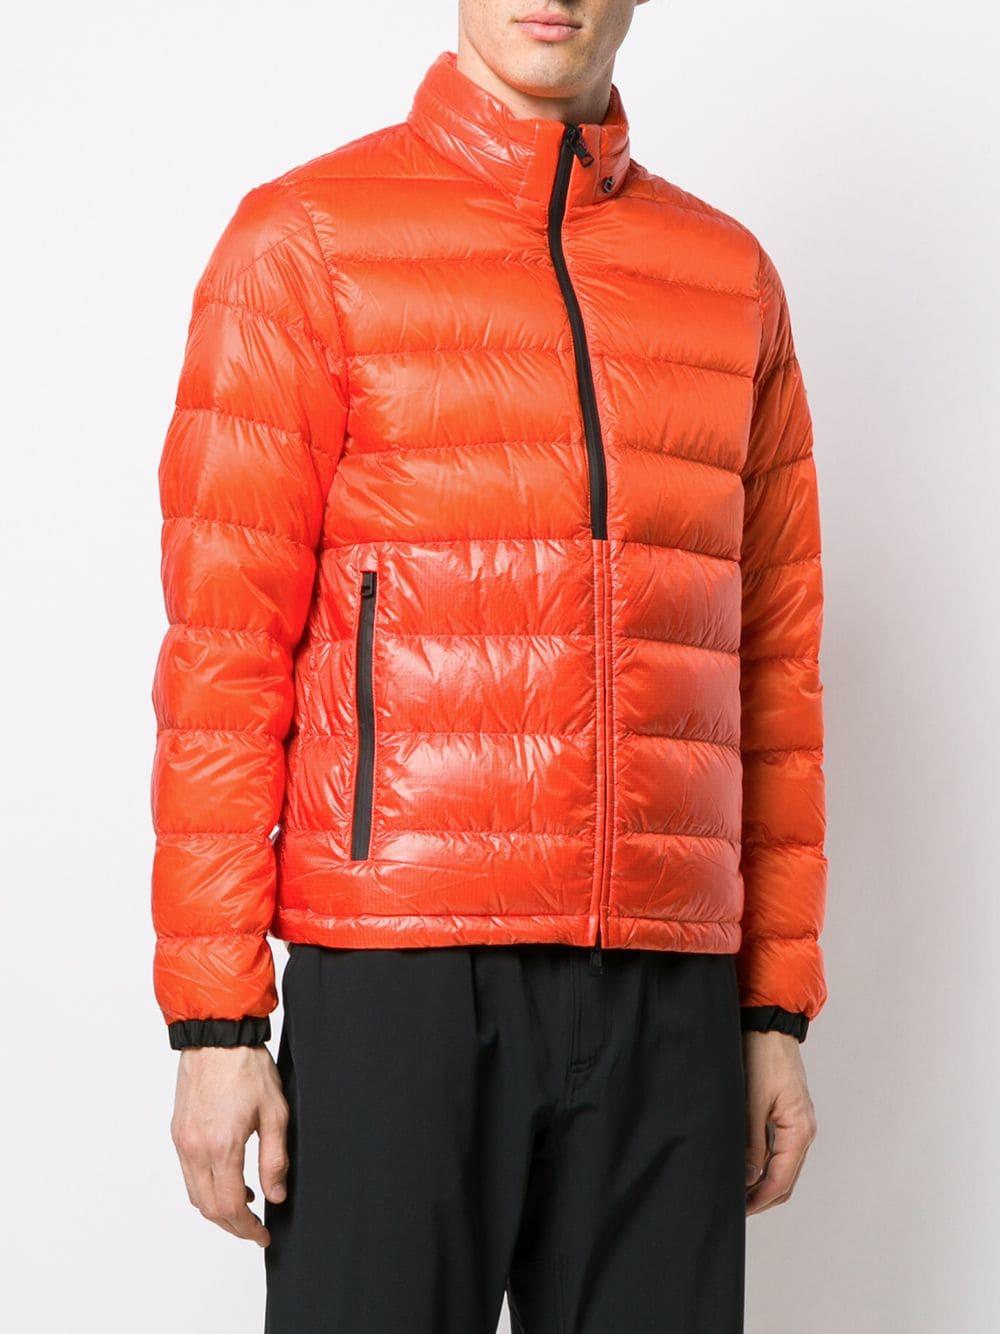 Moncler Short Puffer Jacket in Orange for Men - Lyst